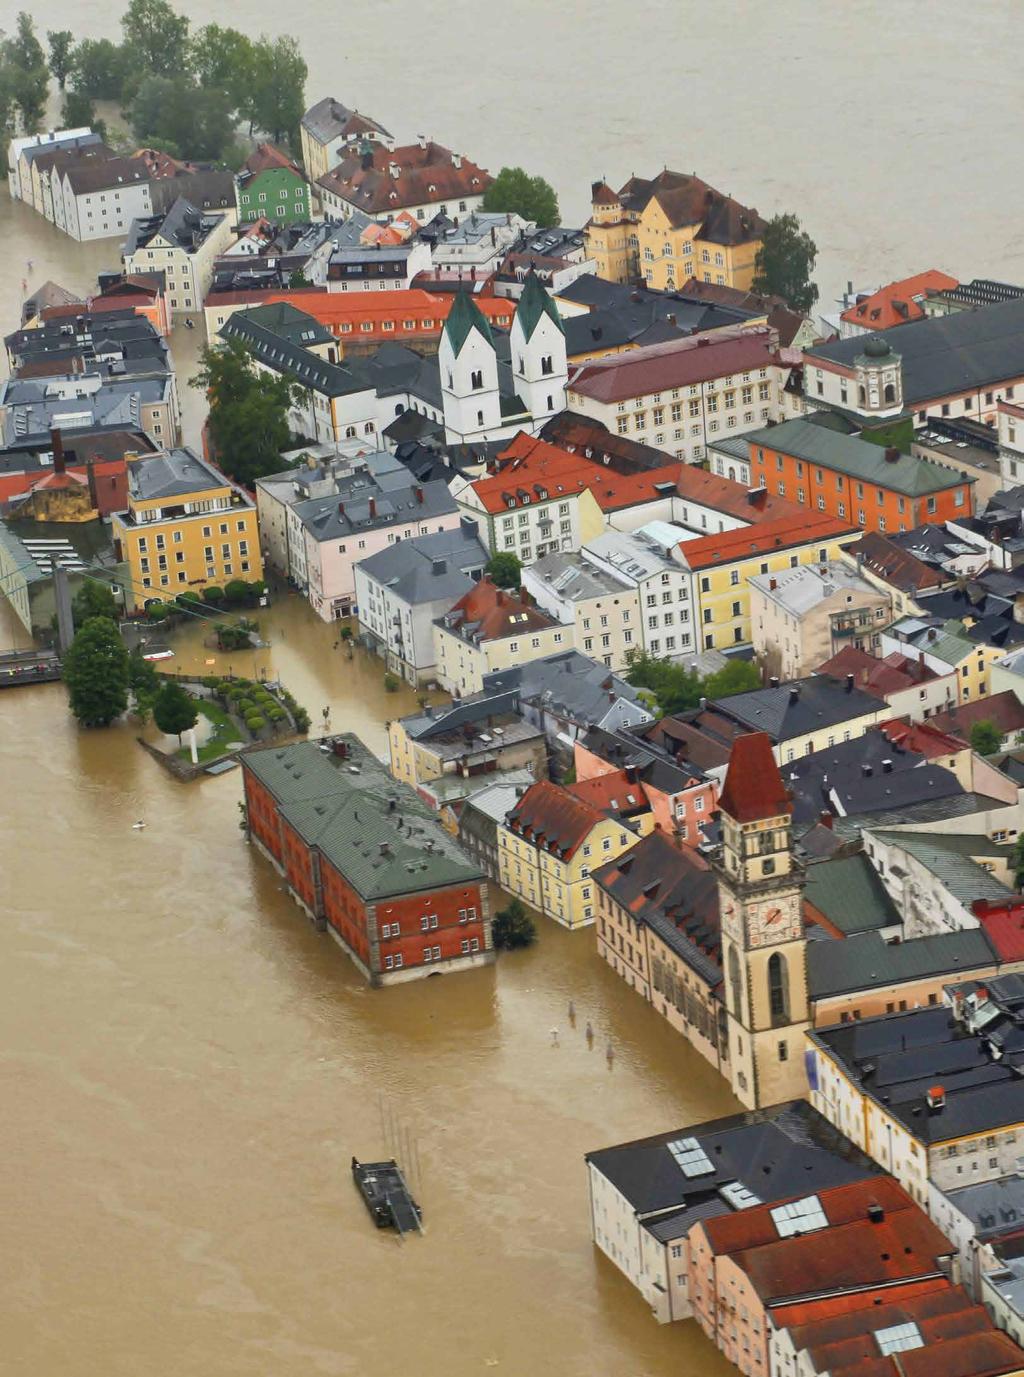 54 Hochwasser Das wird so schnell niemand vergessen: starker, wochenlanger Regen hat durch das Sommerhochwasser 2013 weite Teile Süd-, Ost- und Norddeutschlands in Katastrophengebiete verwandelt.